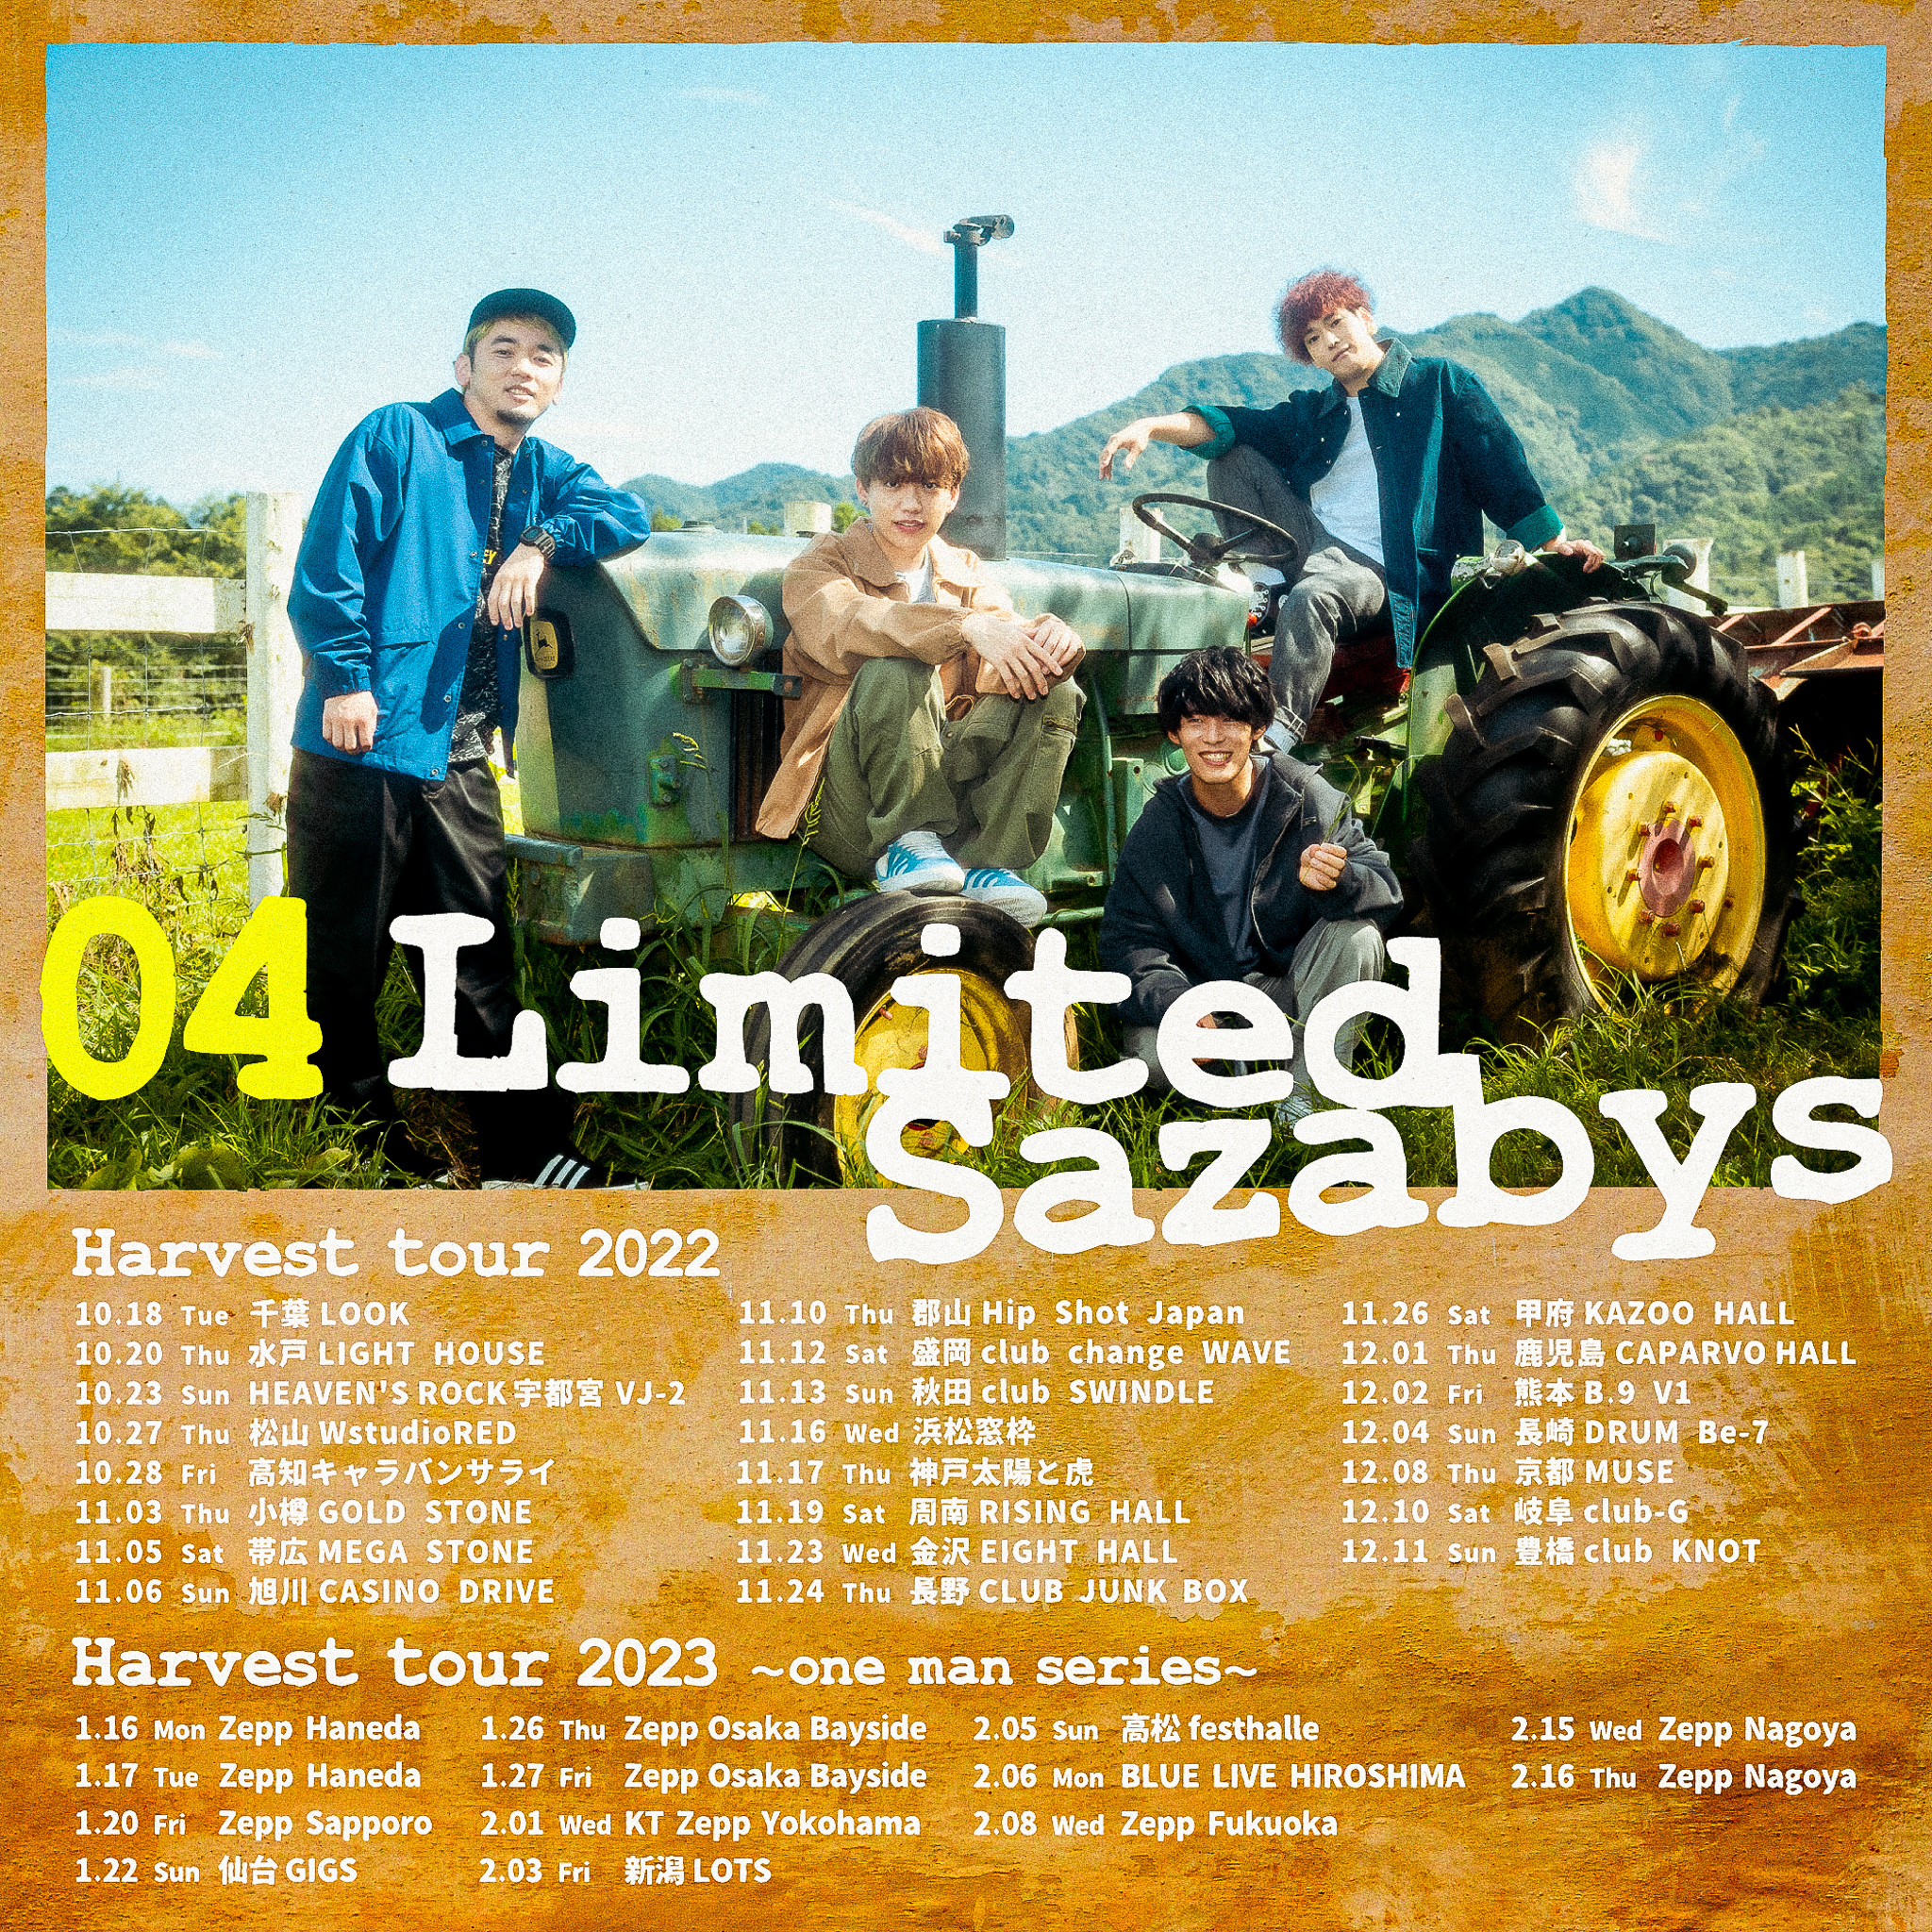 【宮城】04 Limited Sazabys "Harvest tour 2023 〜one man series〜" (仙台GIGS)